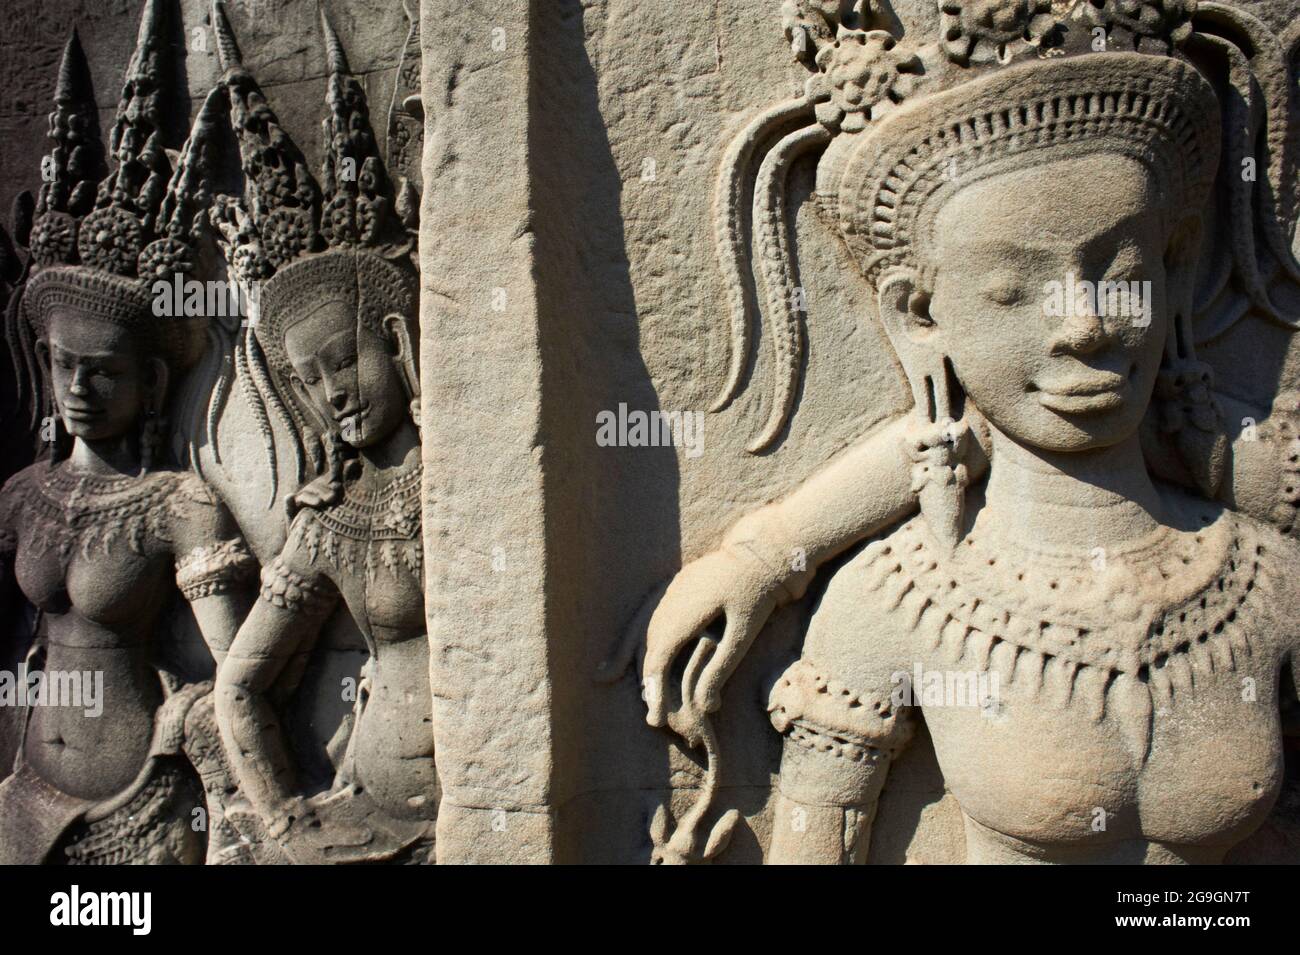 Sudeste de Asia, Camboya, provincia de Siem Reap, sitio de Angkor, patrimonio mundial de Unseco de la UNESCO desde 1992, templo de Angkor Wat (Angkor VAT), siglo XII, Foto de stock